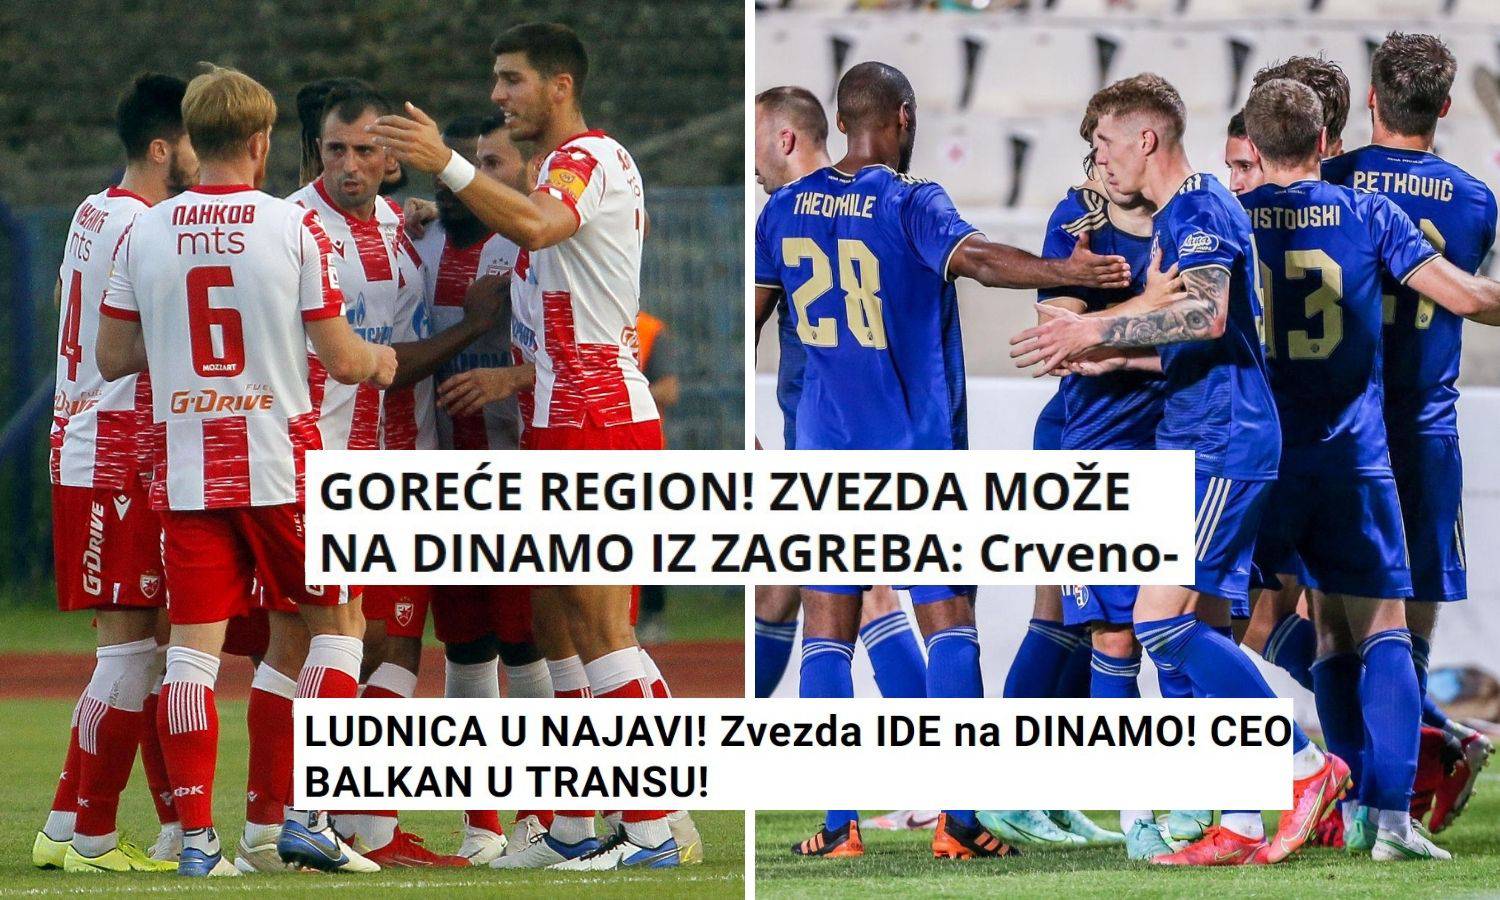 'Goreće region': Evo što srpski mediji pišu nakon što je ždrijeb spojio Dinamo i Crvenu zvezdu